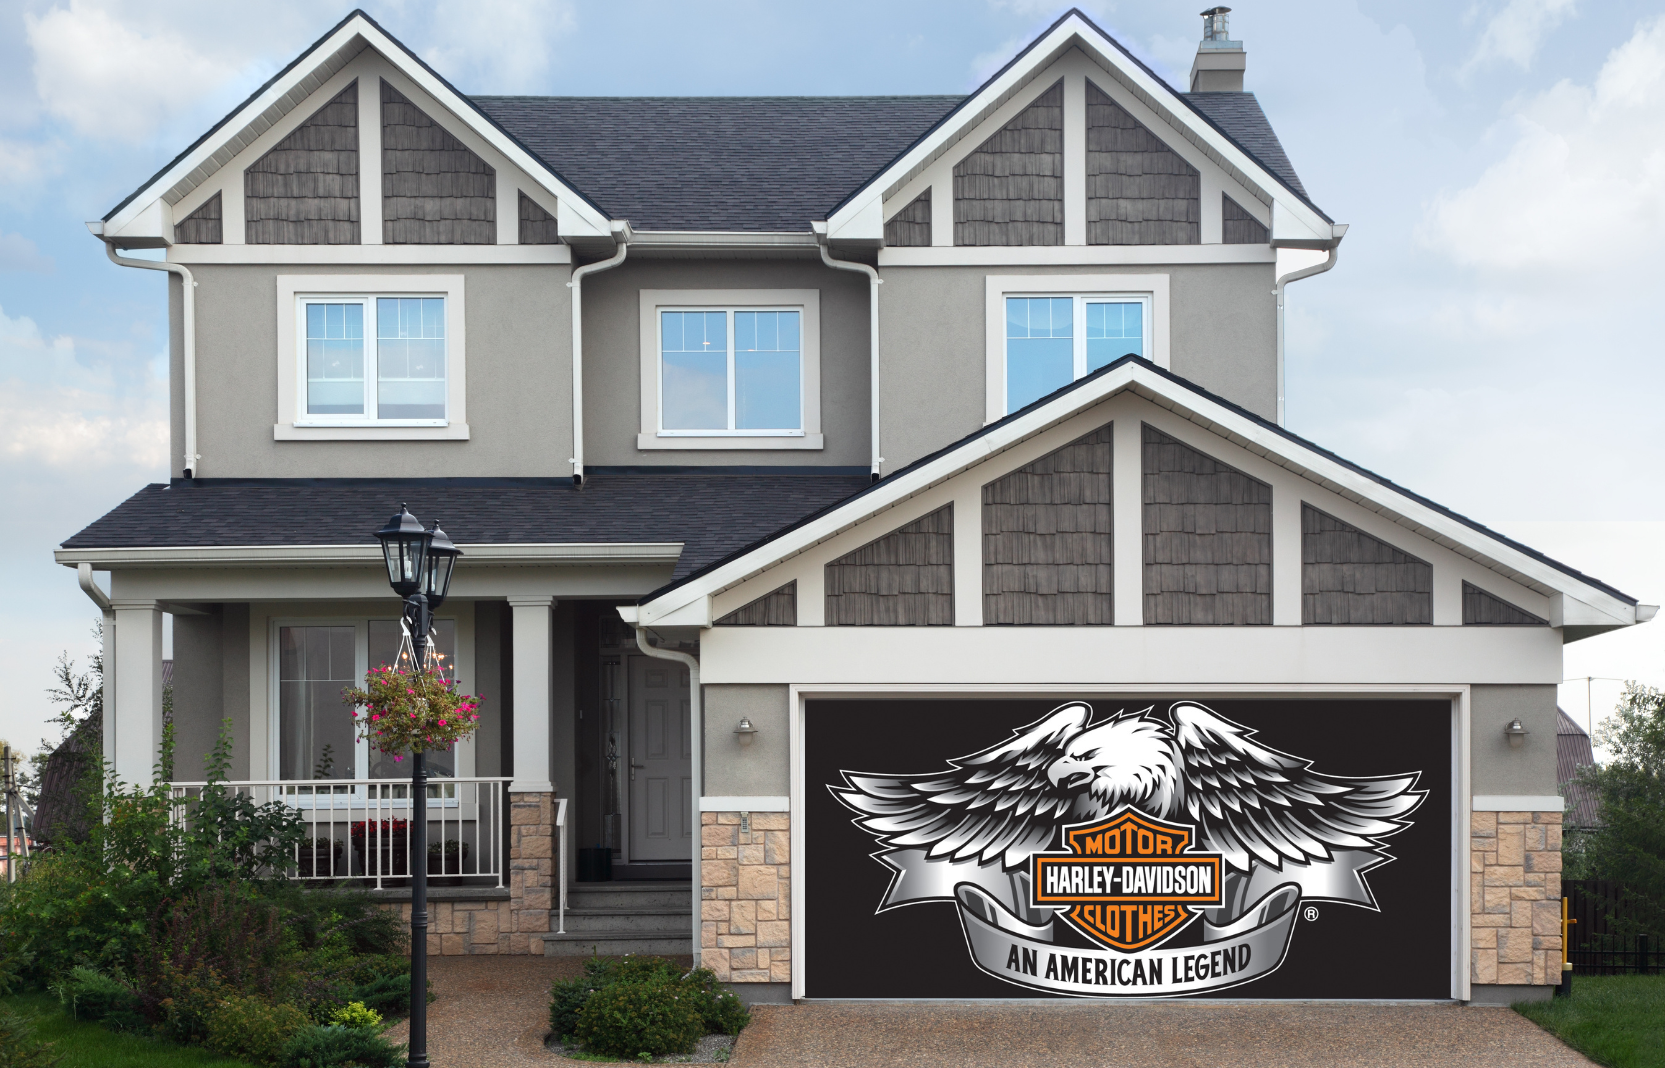 Harley Davidson Garage Door Cover Banner Backdrop | Decor Your Door™